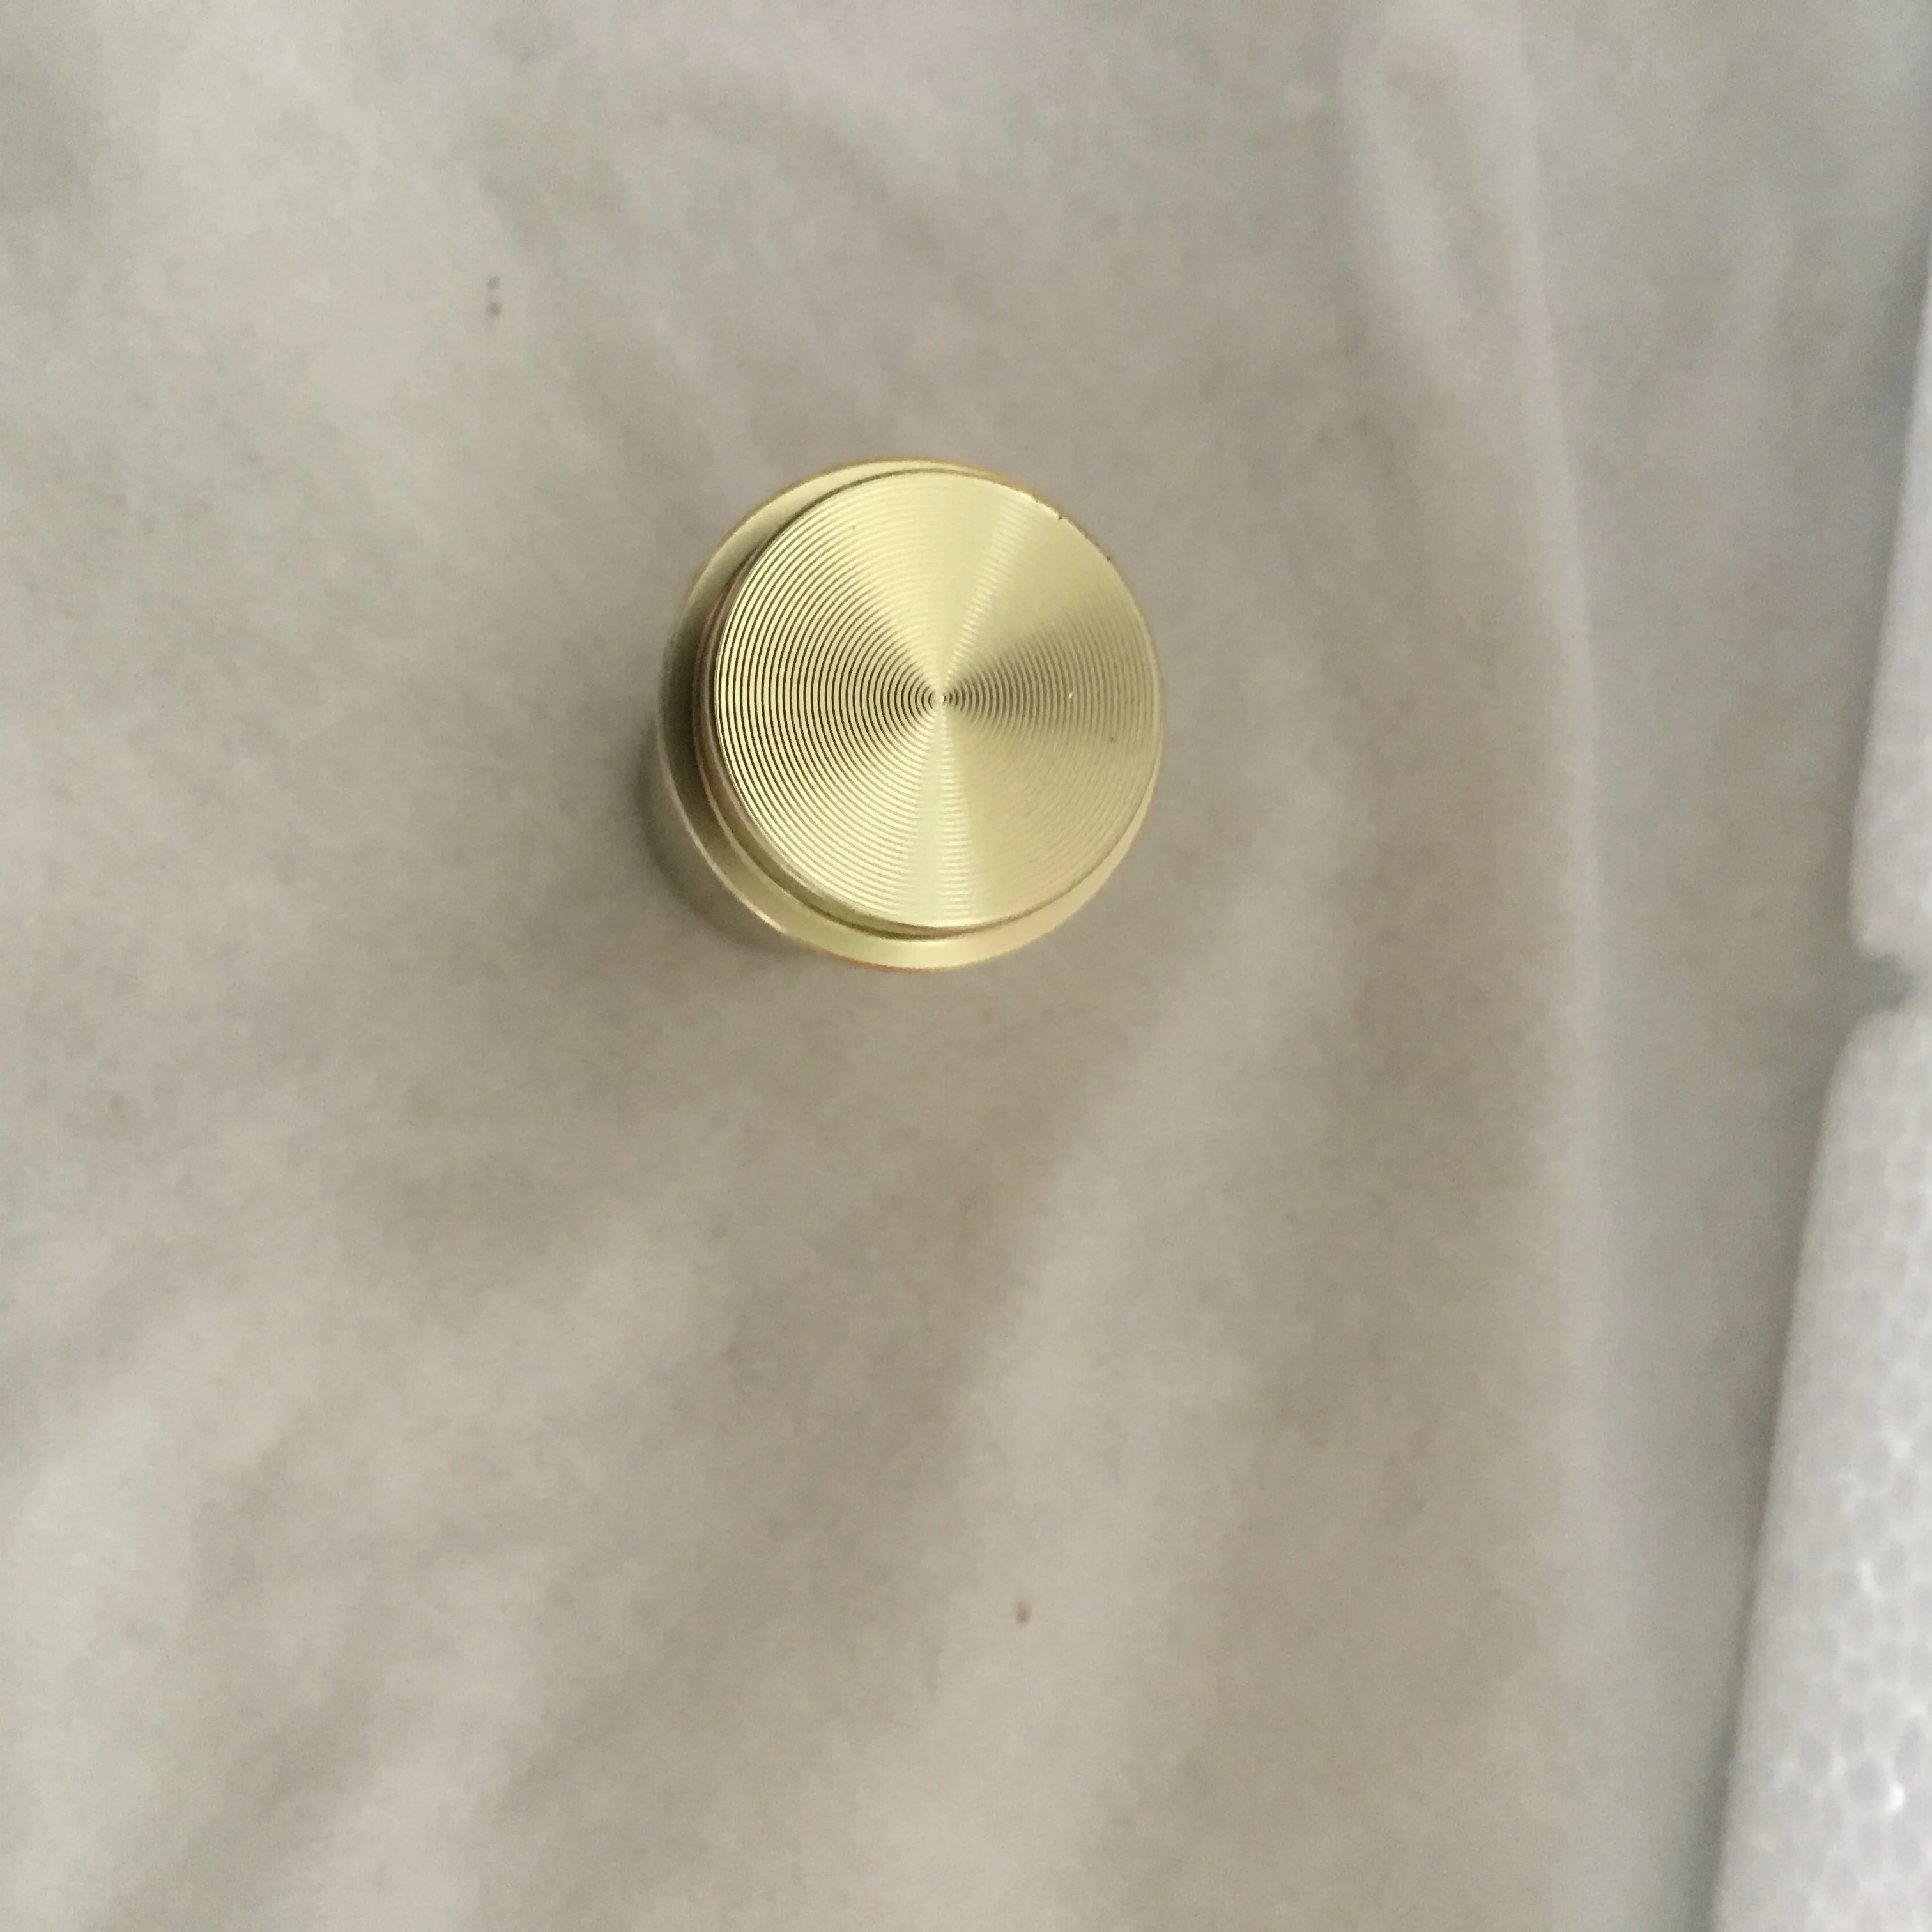 MTTUZK, твердый алюминиевый матовый золотой крючок для халатов, крючок для ключей, пальто в Европейском стиле, крючок для полотенец, кухонные настенные аксессуары для ванной комнаты